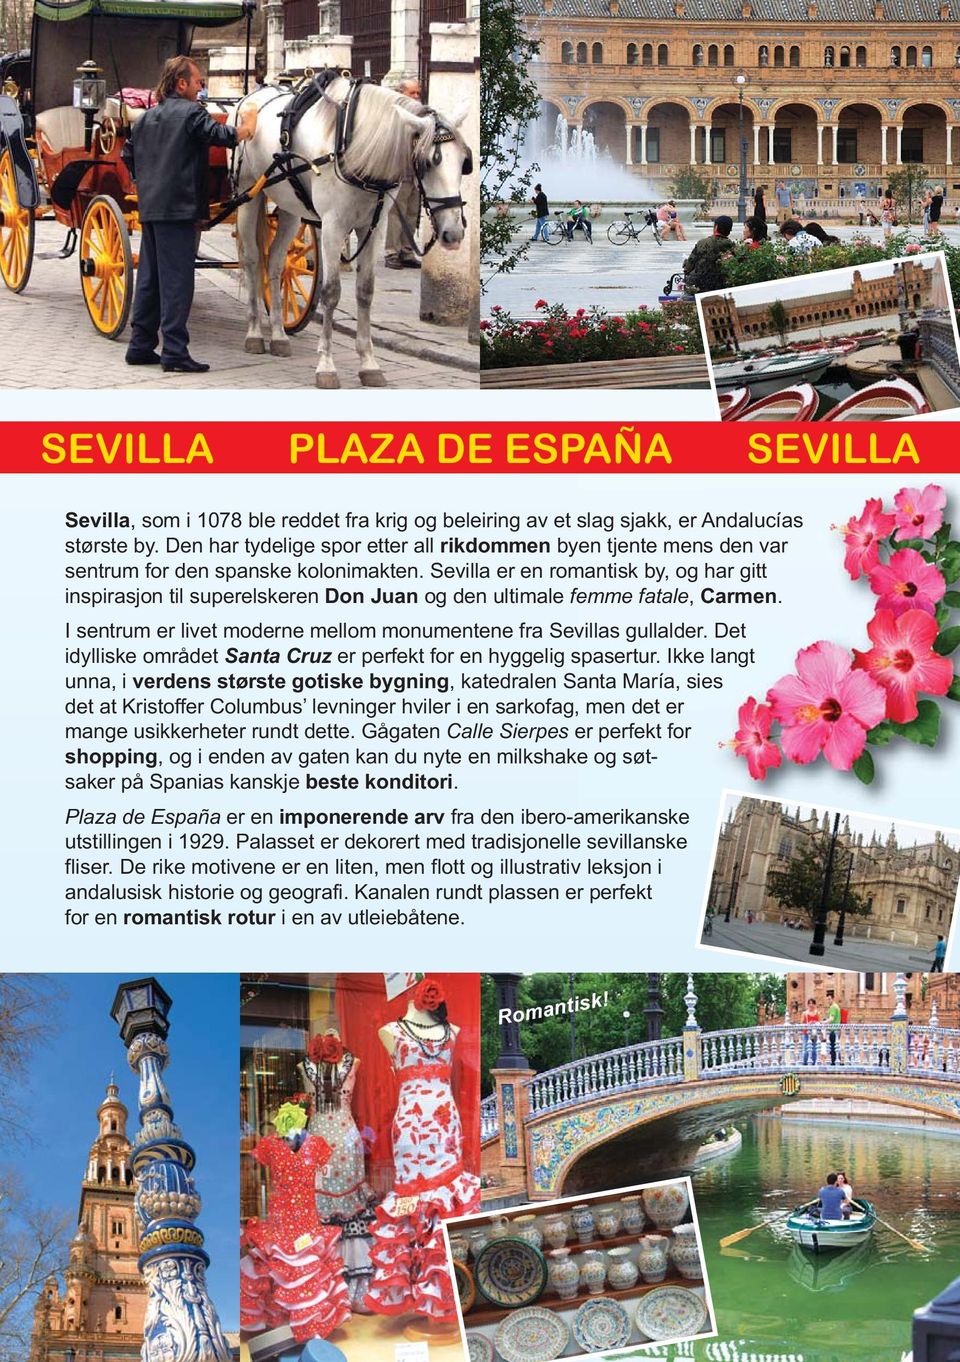 Sevilla er en romantisk by, og har gitt inspirasjon til superelskeren Don Juan og den ultimale femme fatale, Carmen. I sentrum er livet moderne mellom monumentene fra Sevillas gullalder.